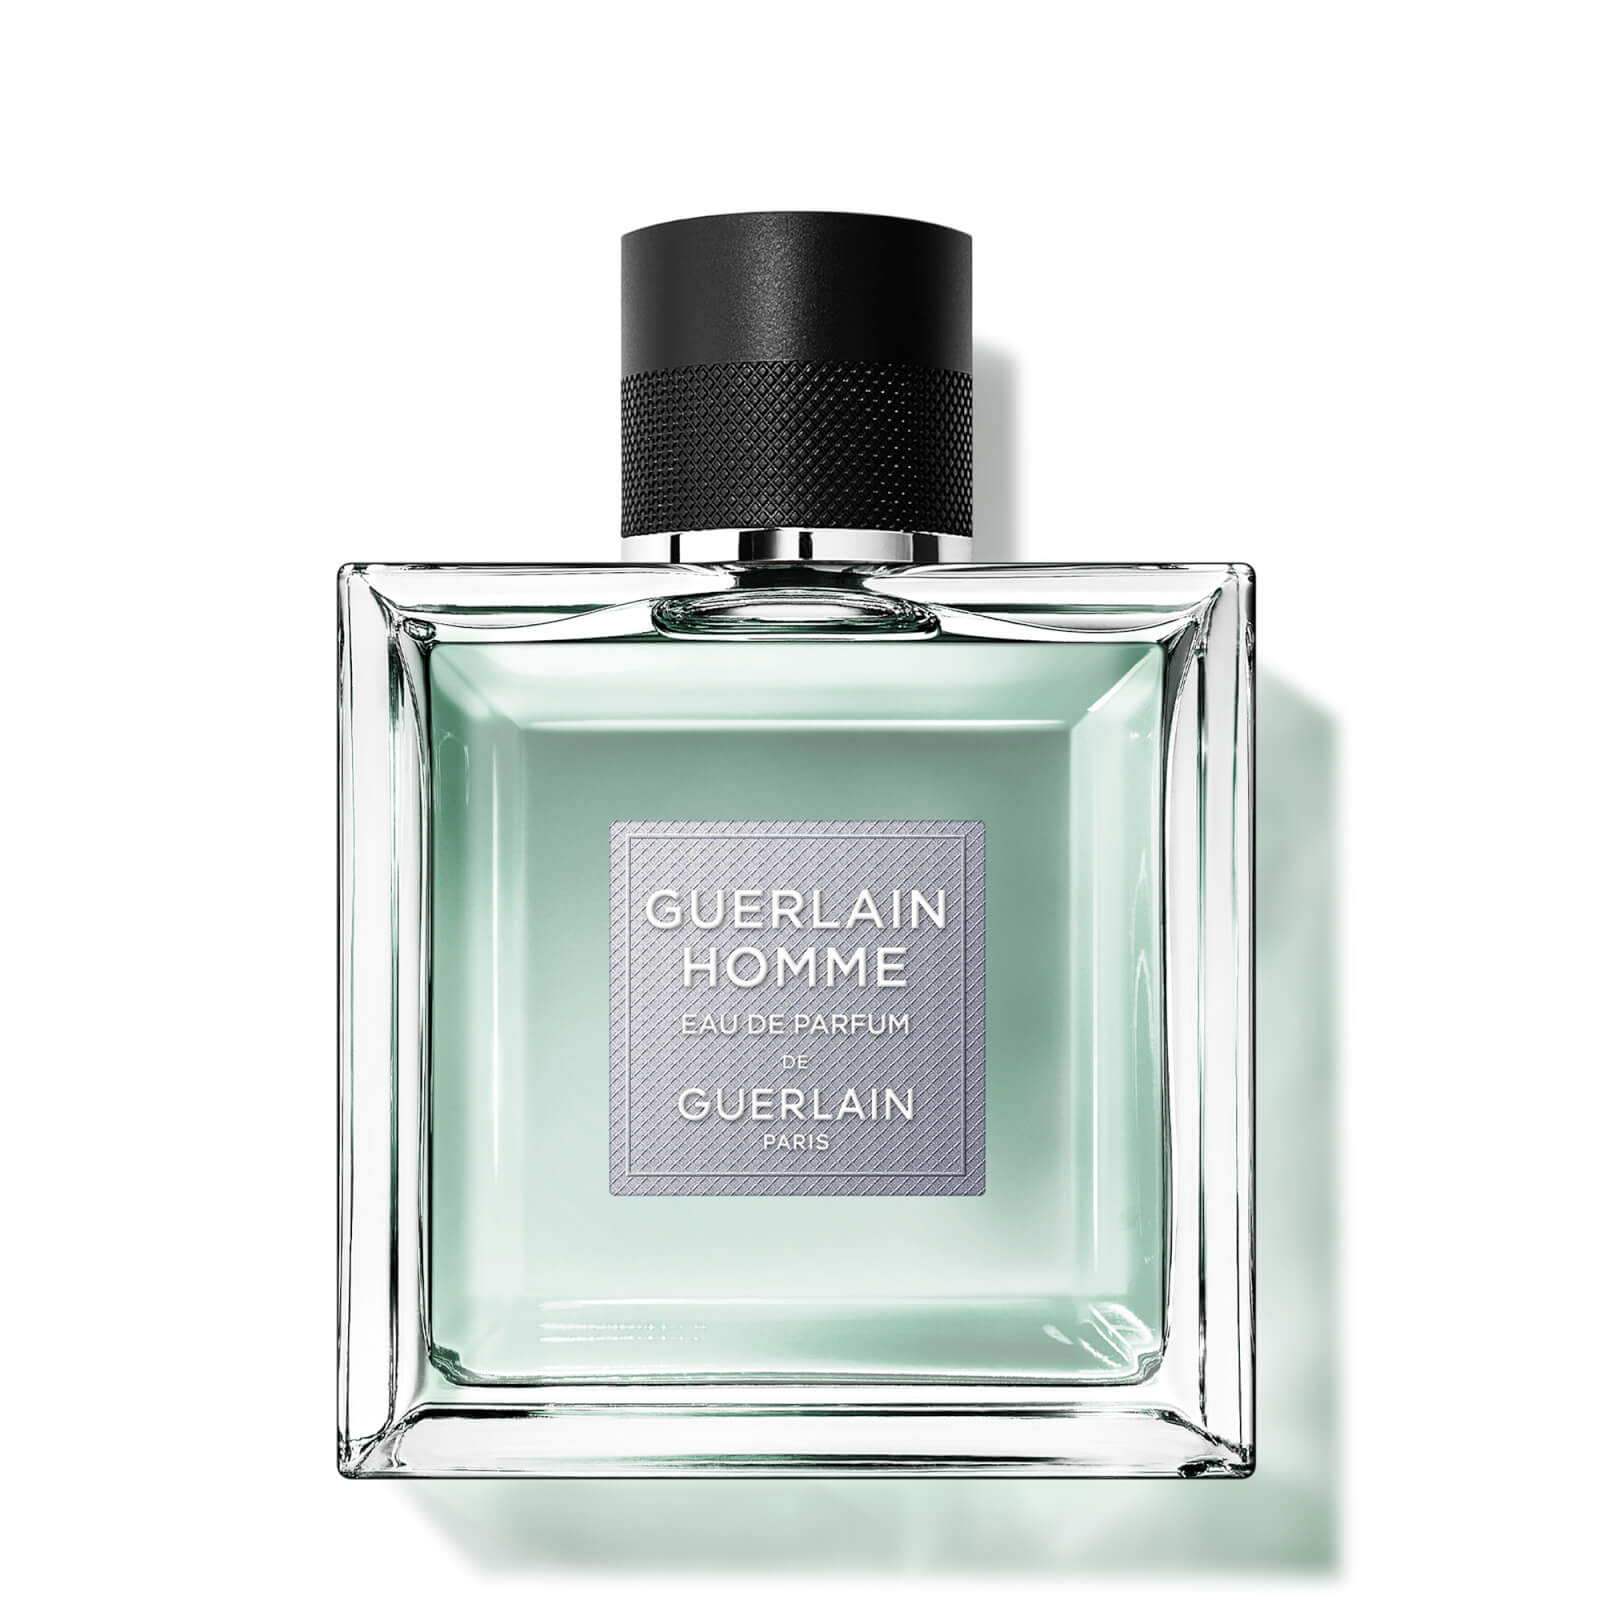 Photos - Women's Fragrance Guerlain Homme Eau De Parfum 100ml 